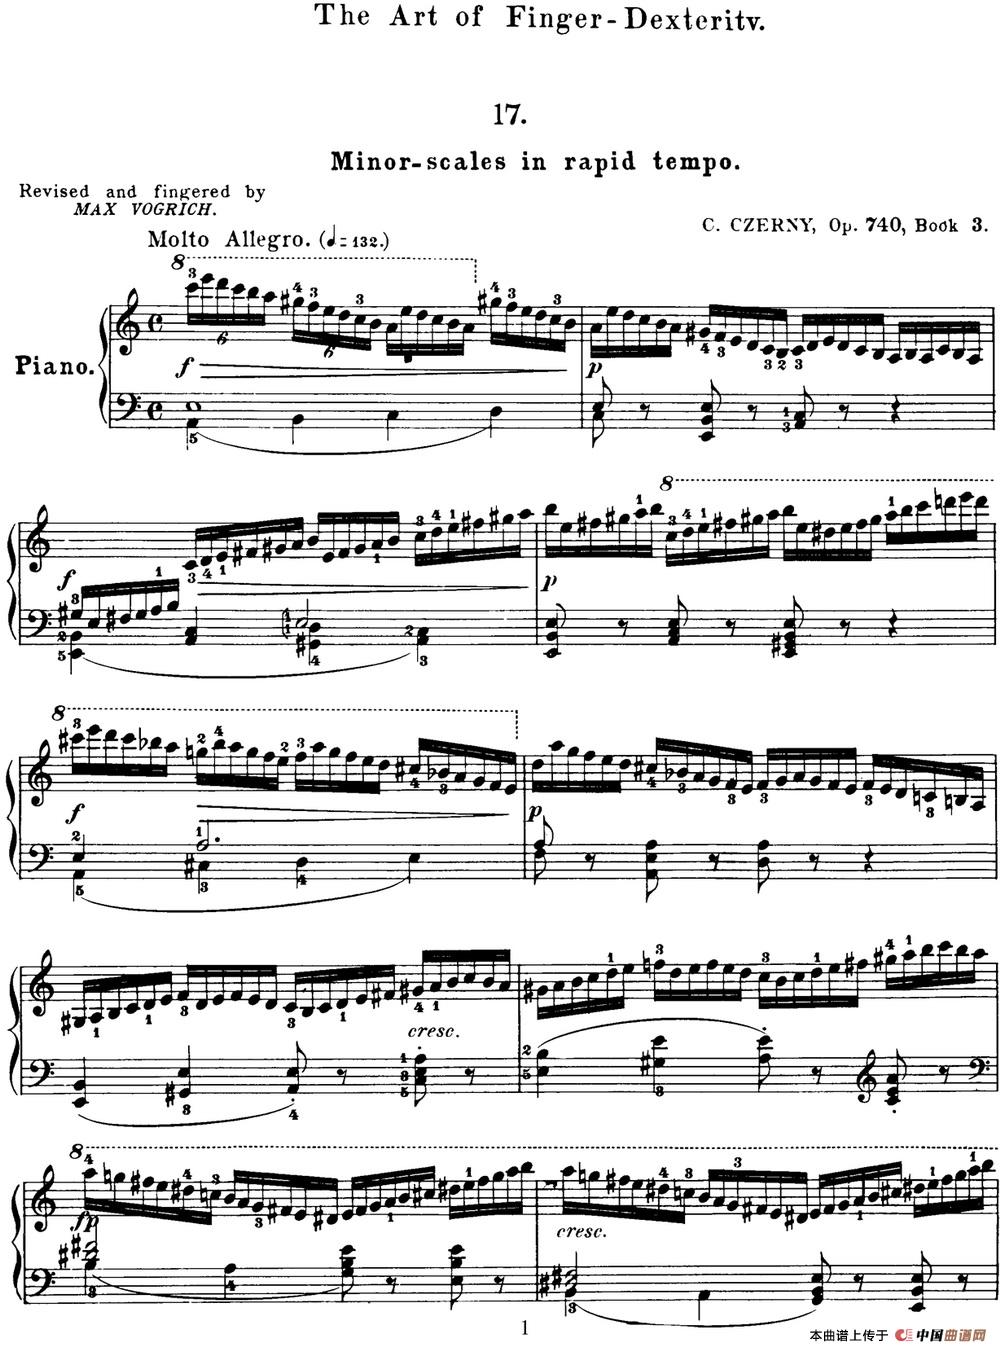 50首车尔尼Op.740钢琴手指灵巧技术练习曲（NO.17）(1)_C740_页面_060.jpg